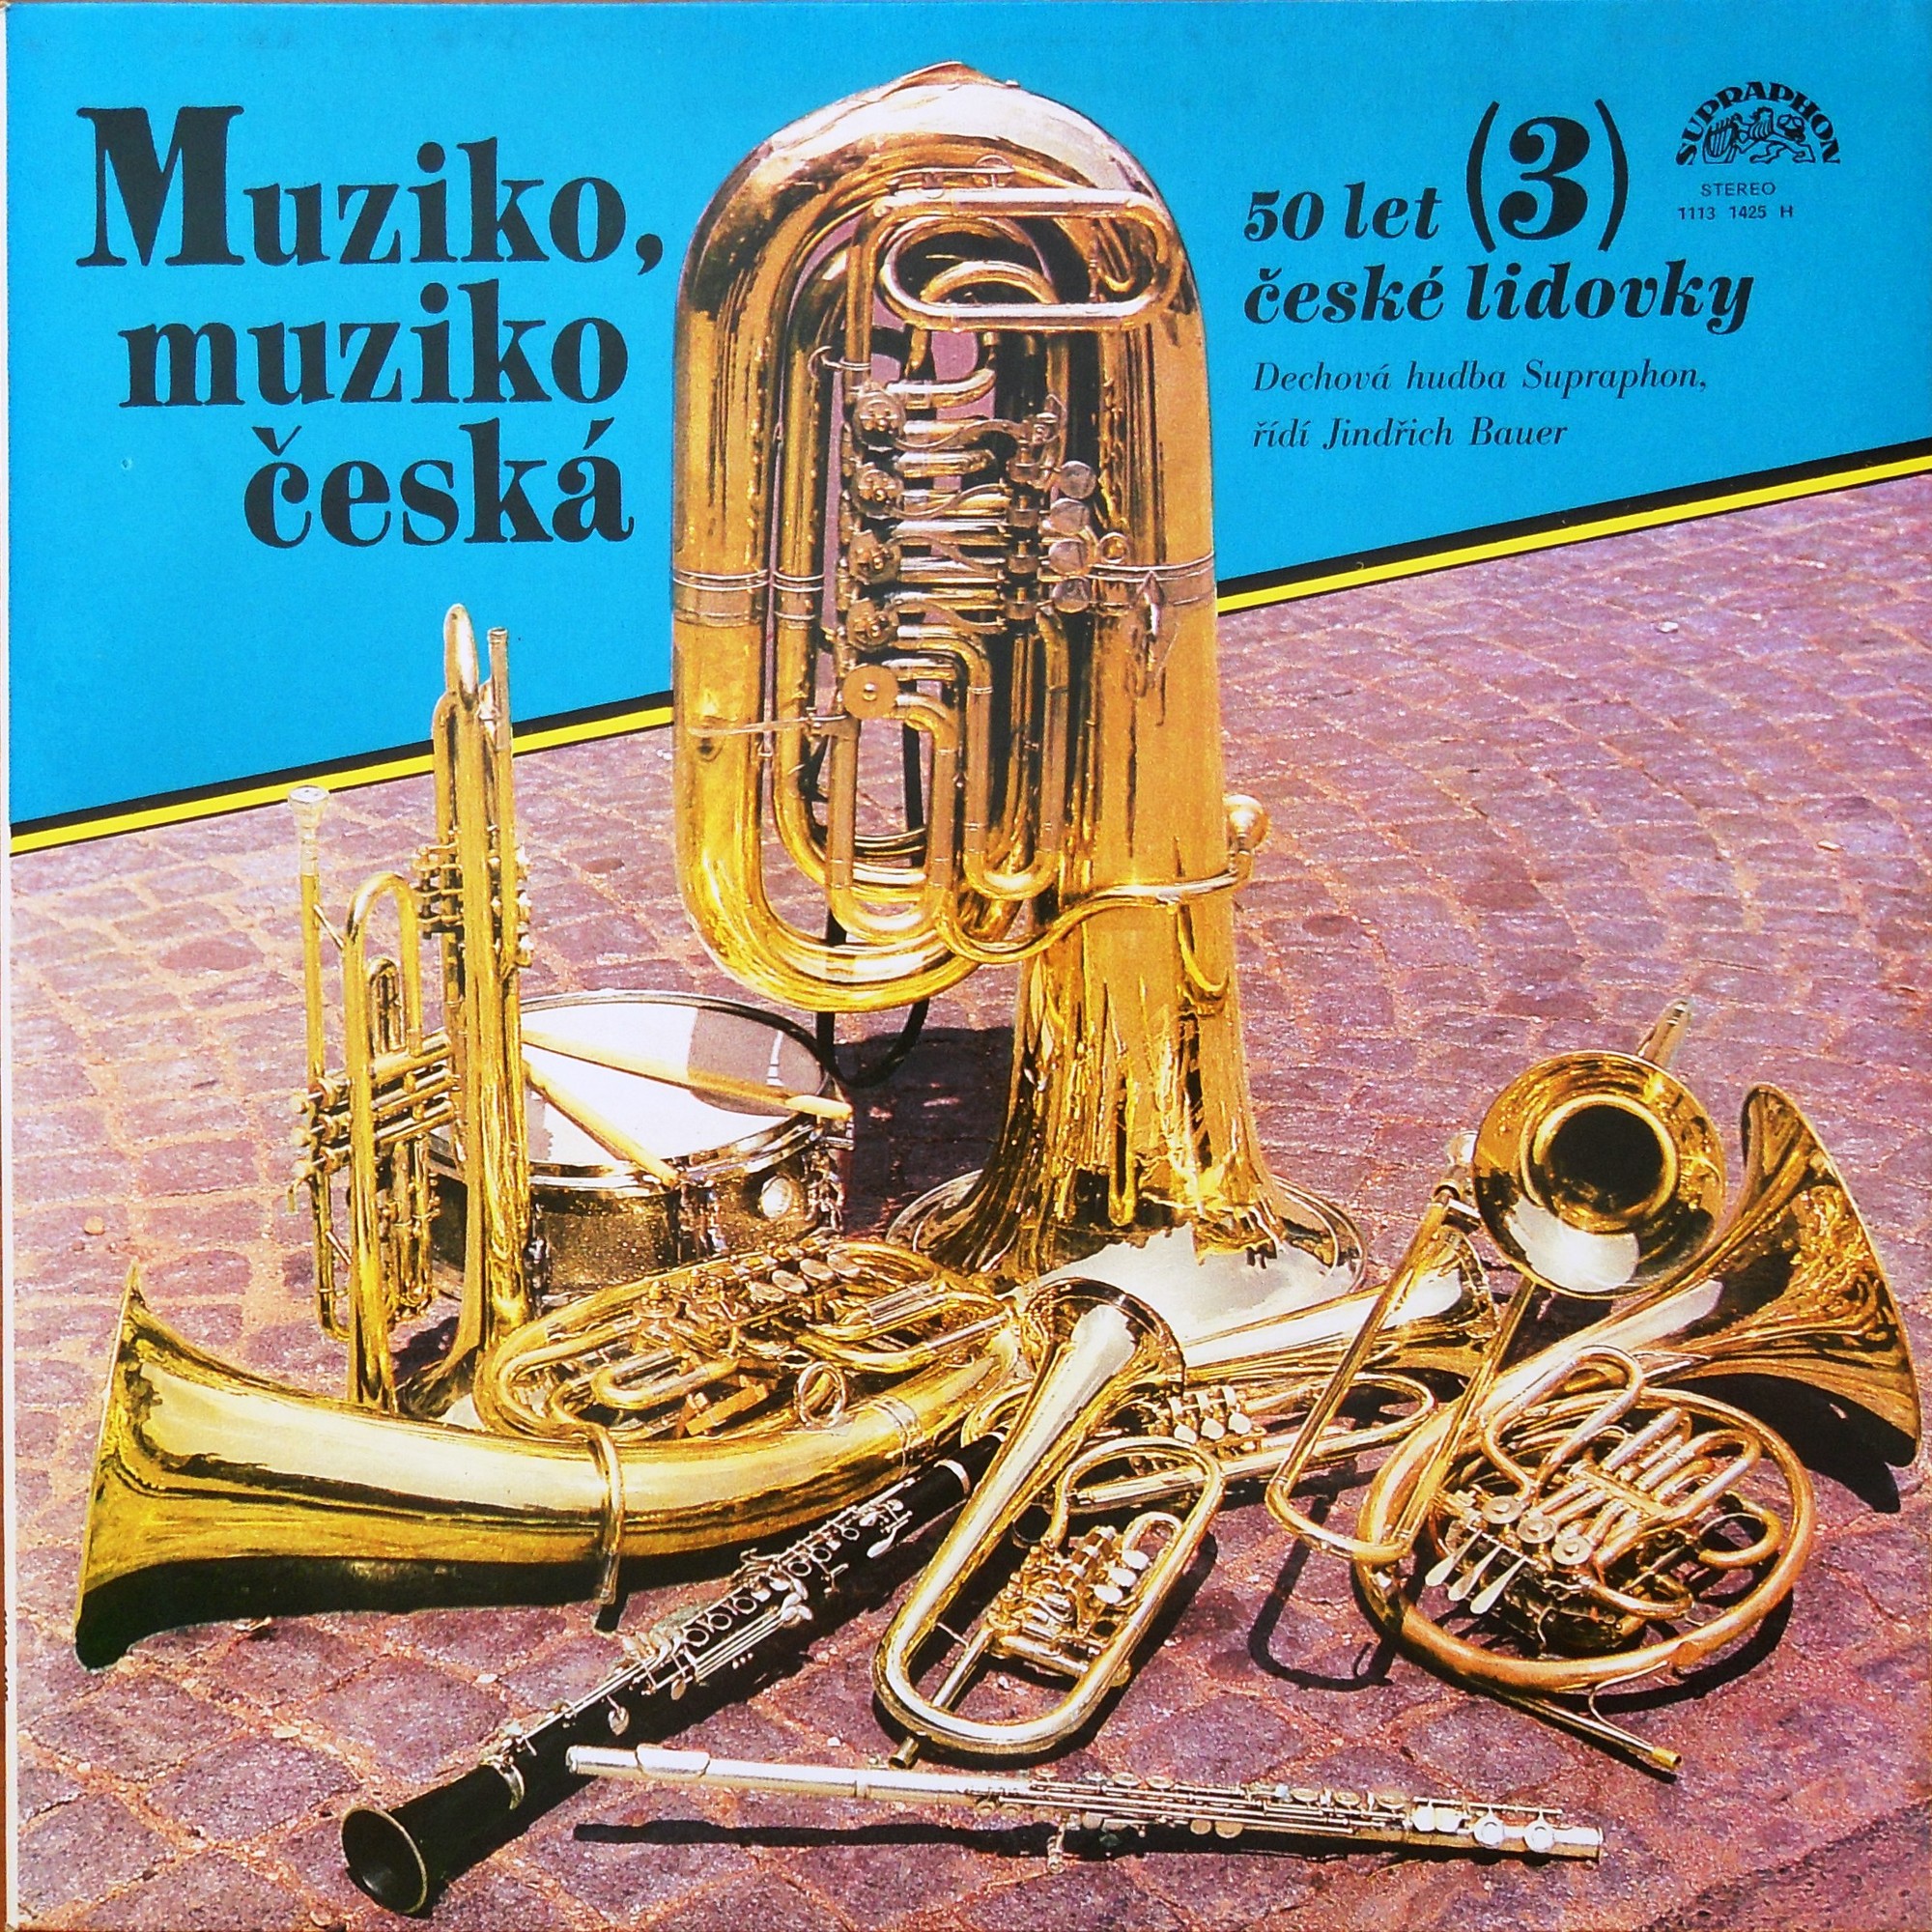 Muziko, muziko ceska. 50 let české lidovky. Vol.3 [по заказу чешской фирмы SUPRAPHON 1113 1425]